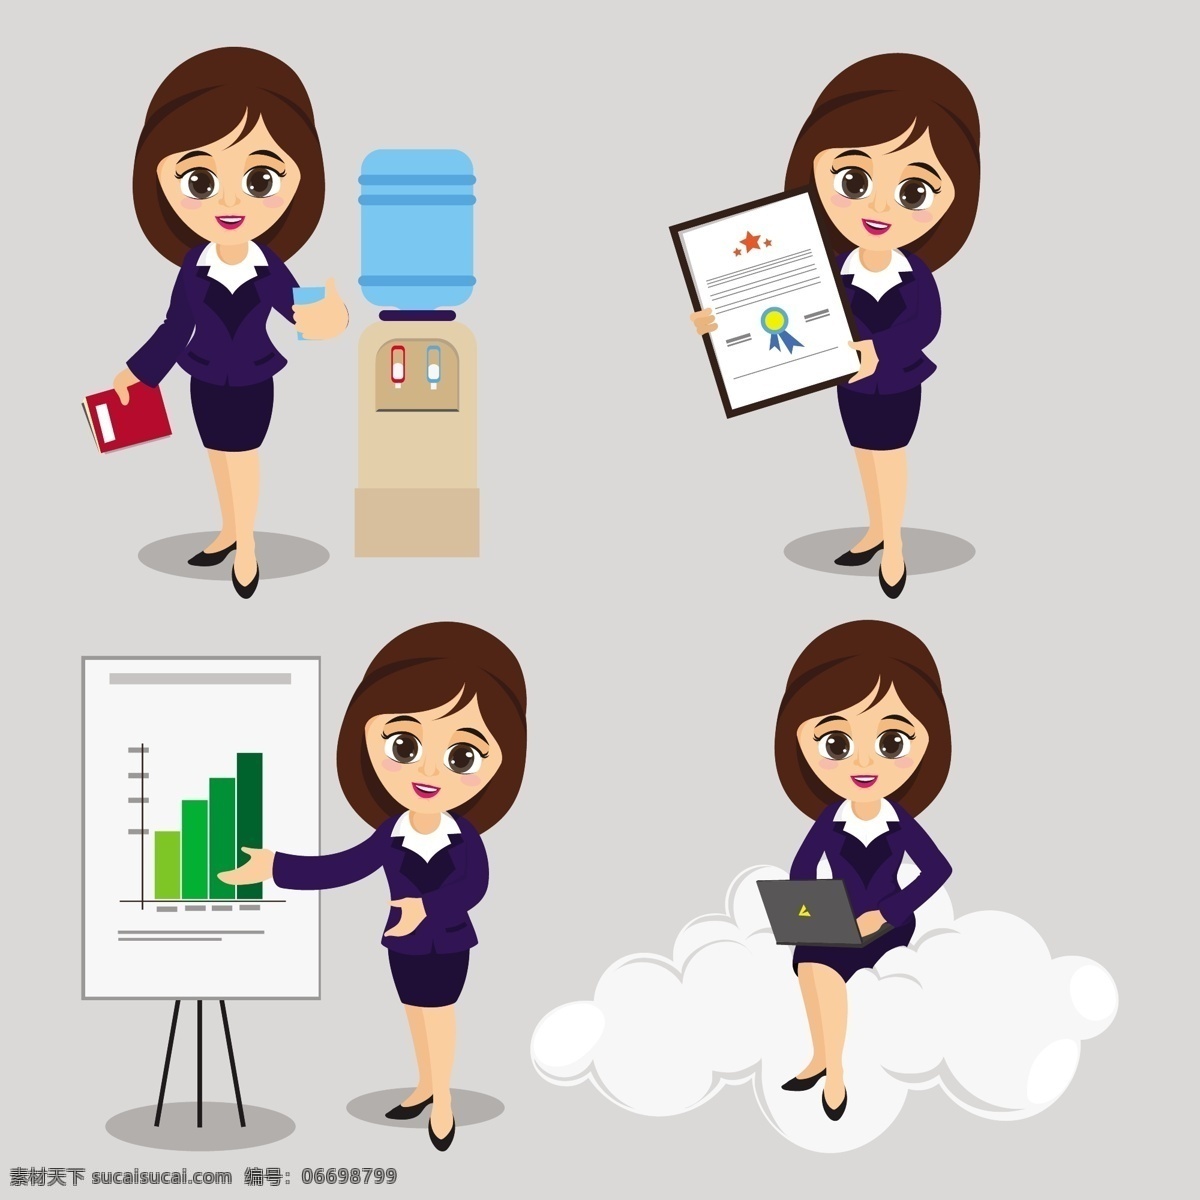 四 种 不同 姿势 年轻 商业 女性 形象 动画 插图 卡通 办公室 图表 演示 公司 人物